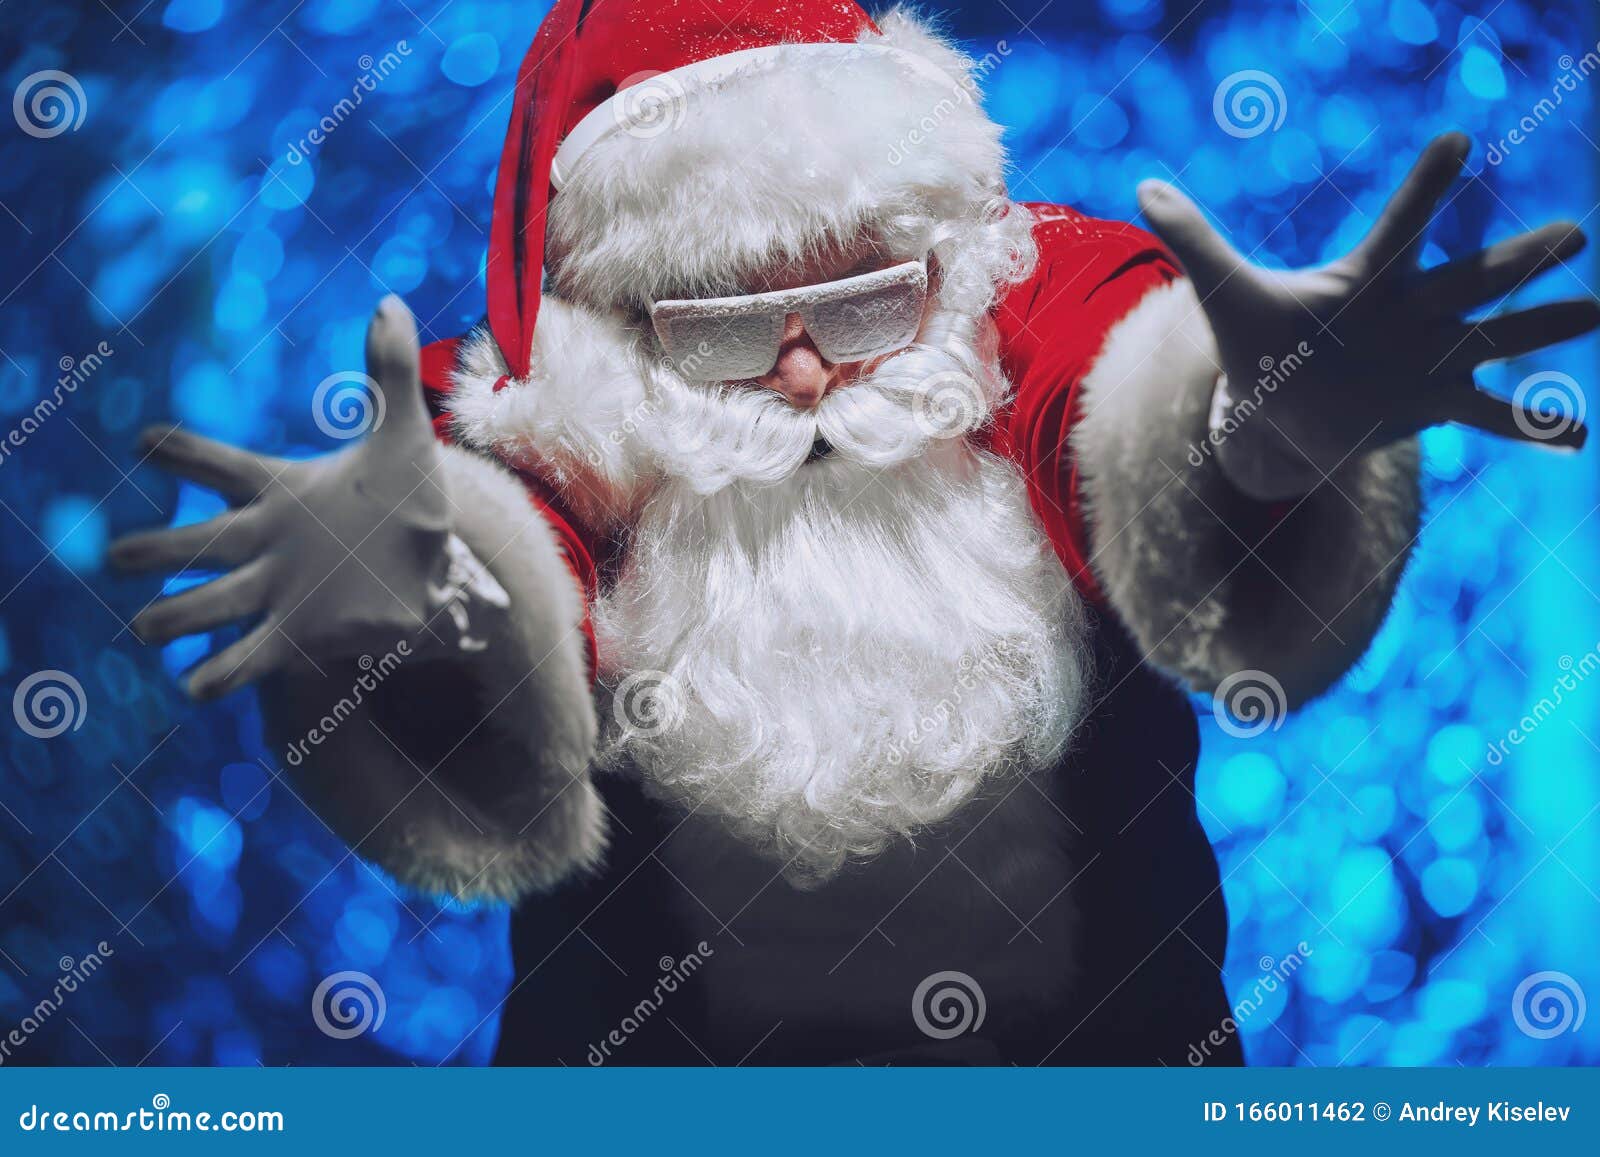 Hãy cùng tận hưởng một mùa lễ hội Giáng sinh thú vị với ảnh đúng dịp lễ. Tại đây, bạn sẽ được gặp ông già Noel đeo kính trong tuyết, tạo nên không khí ấm áp, tình cảm. Hãy nhấn vào hình ảnh để tận hưởng những giây phút đầy ý nghĩa và cảm xúc tuyệt vời.